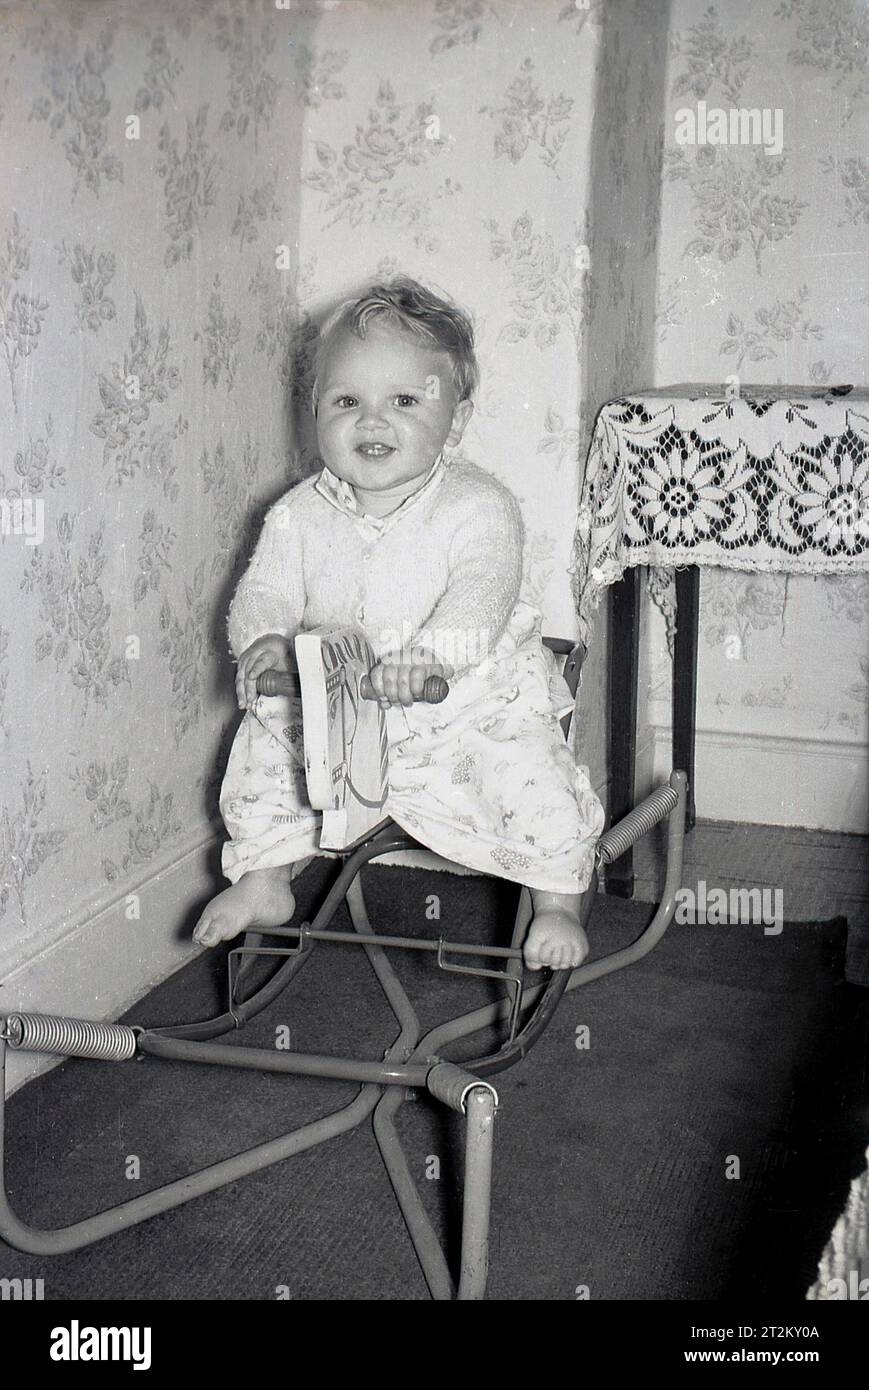 1960er Jahre Historisch, in einem Raum, ein zwitschernder Junge, der auf einem metallgerahmten, federgerahmten Schaukelpferd sitzt, England, Großbritannien. Stockfoto